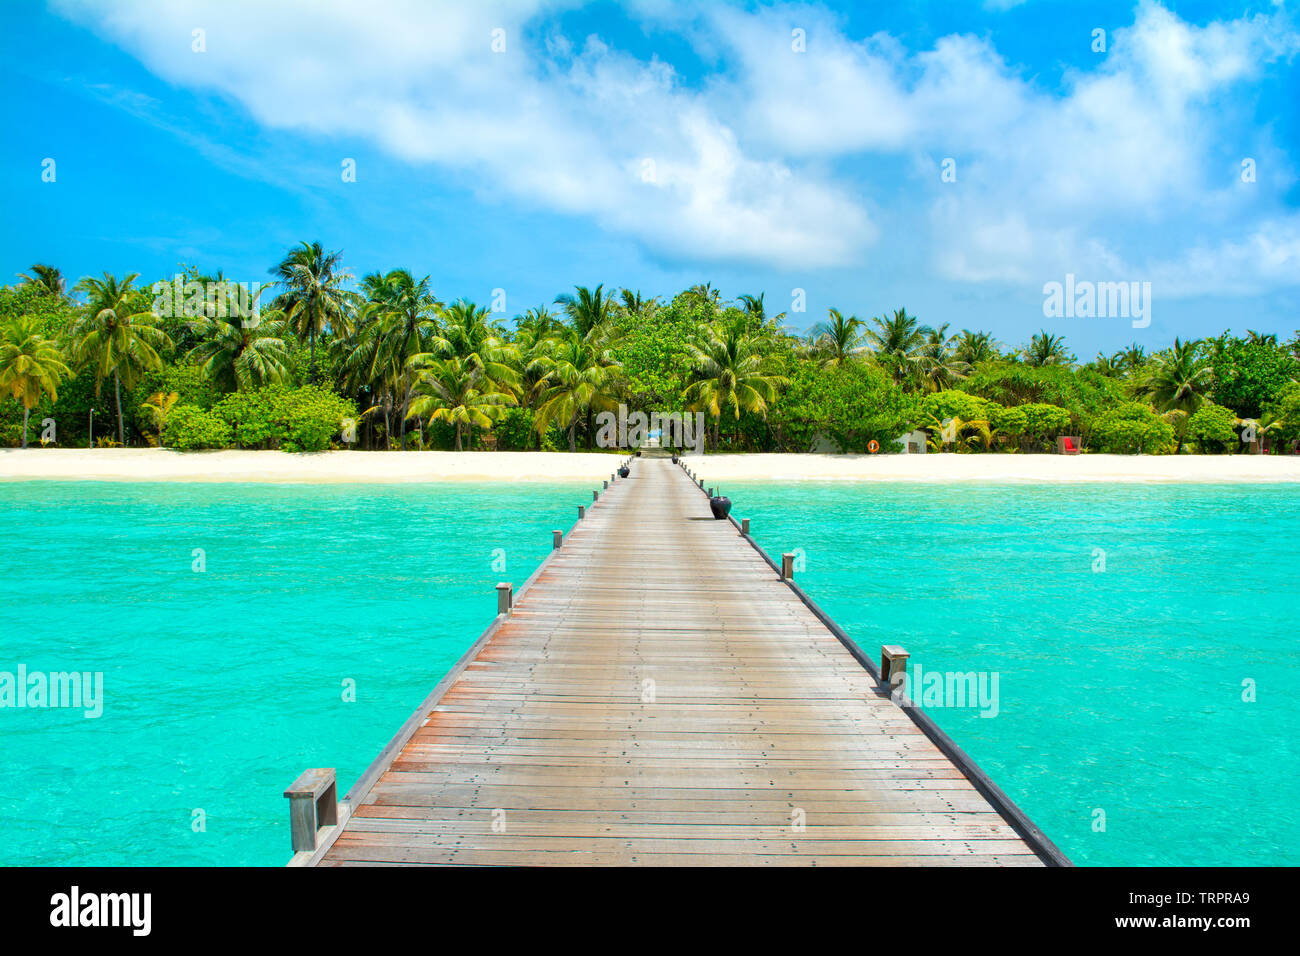 Beau paysage d'au-dessus de l'eau pont en bois à plage de sable fin avec palmiers et plantes tropicales, Maldives, océan Indien Banque D'Images